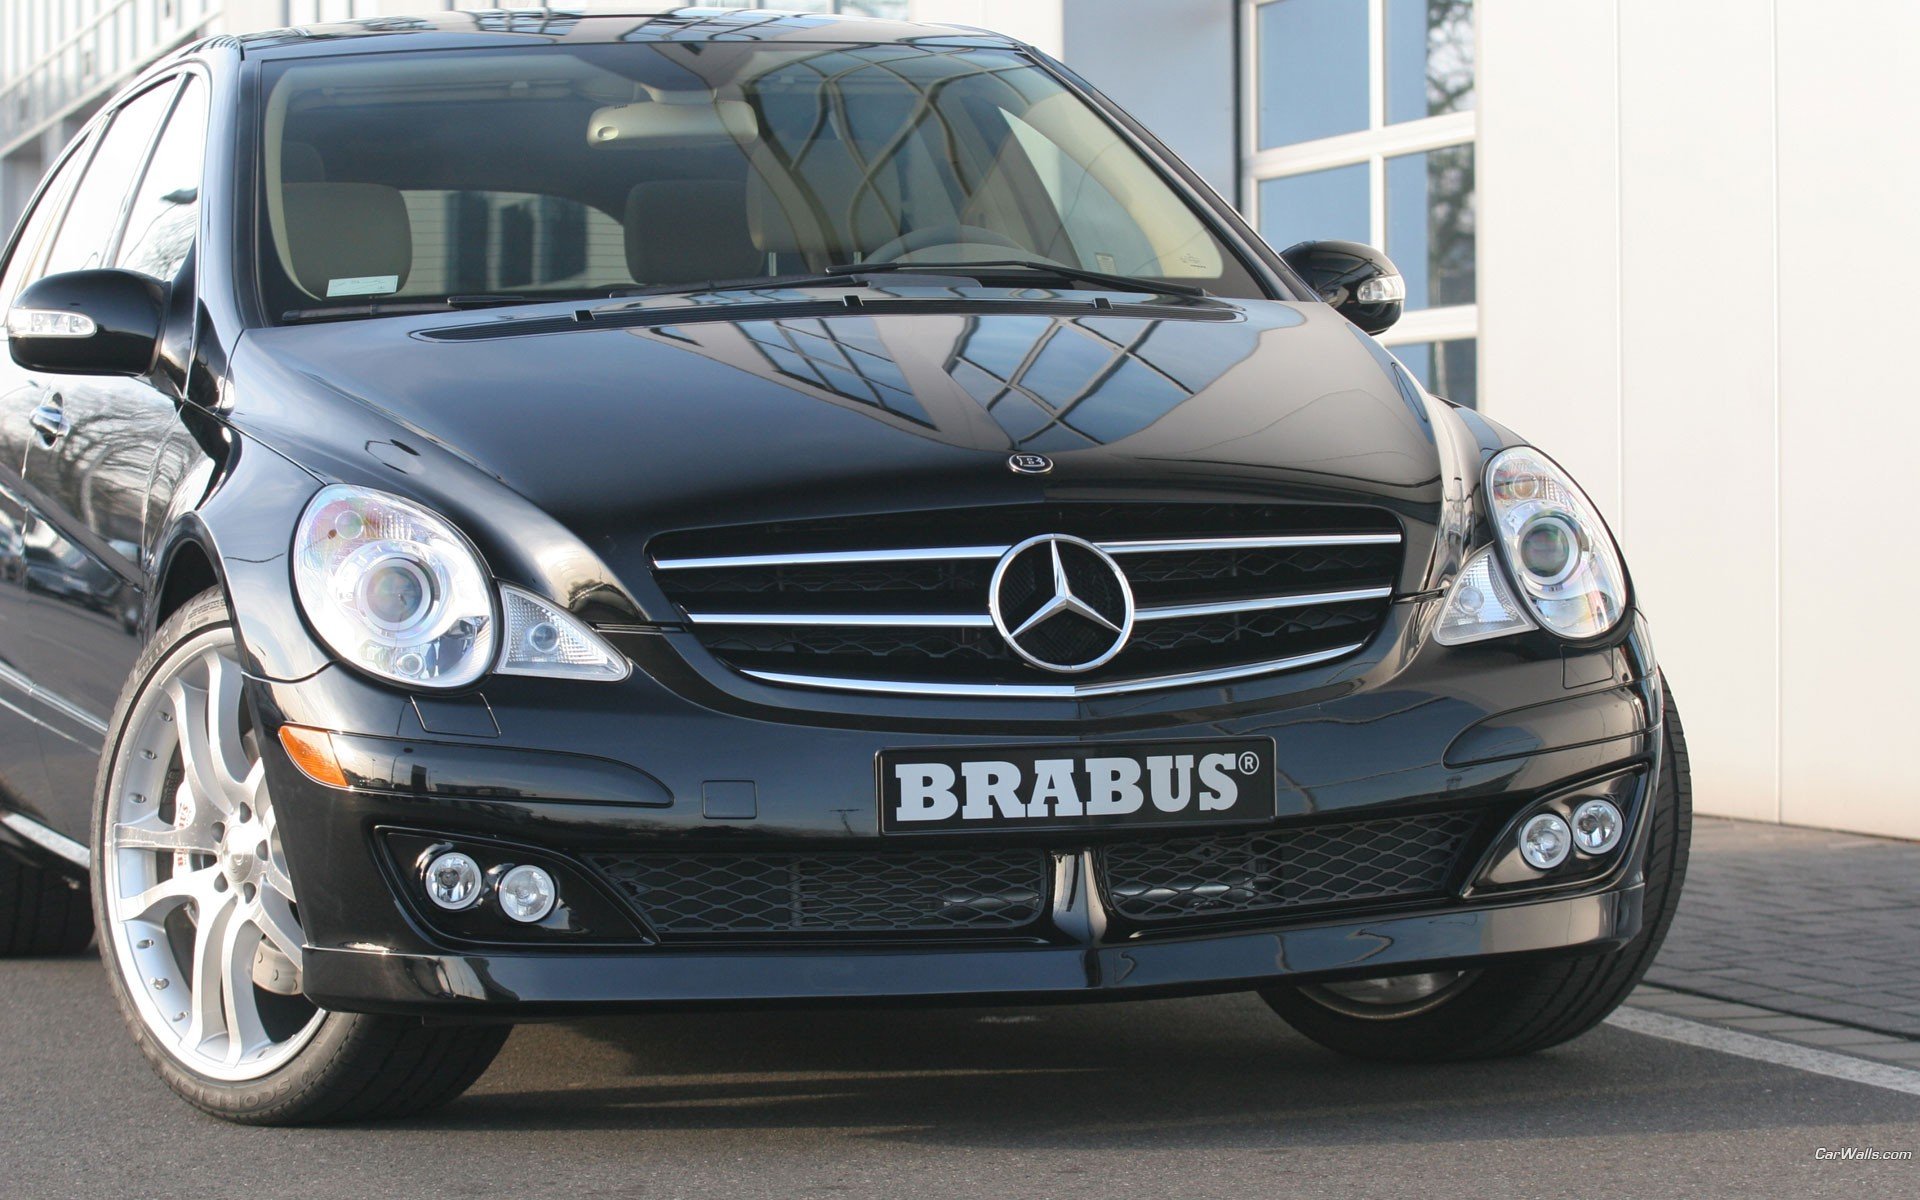 cars, Brabus, Mercedes benz Wallpaper